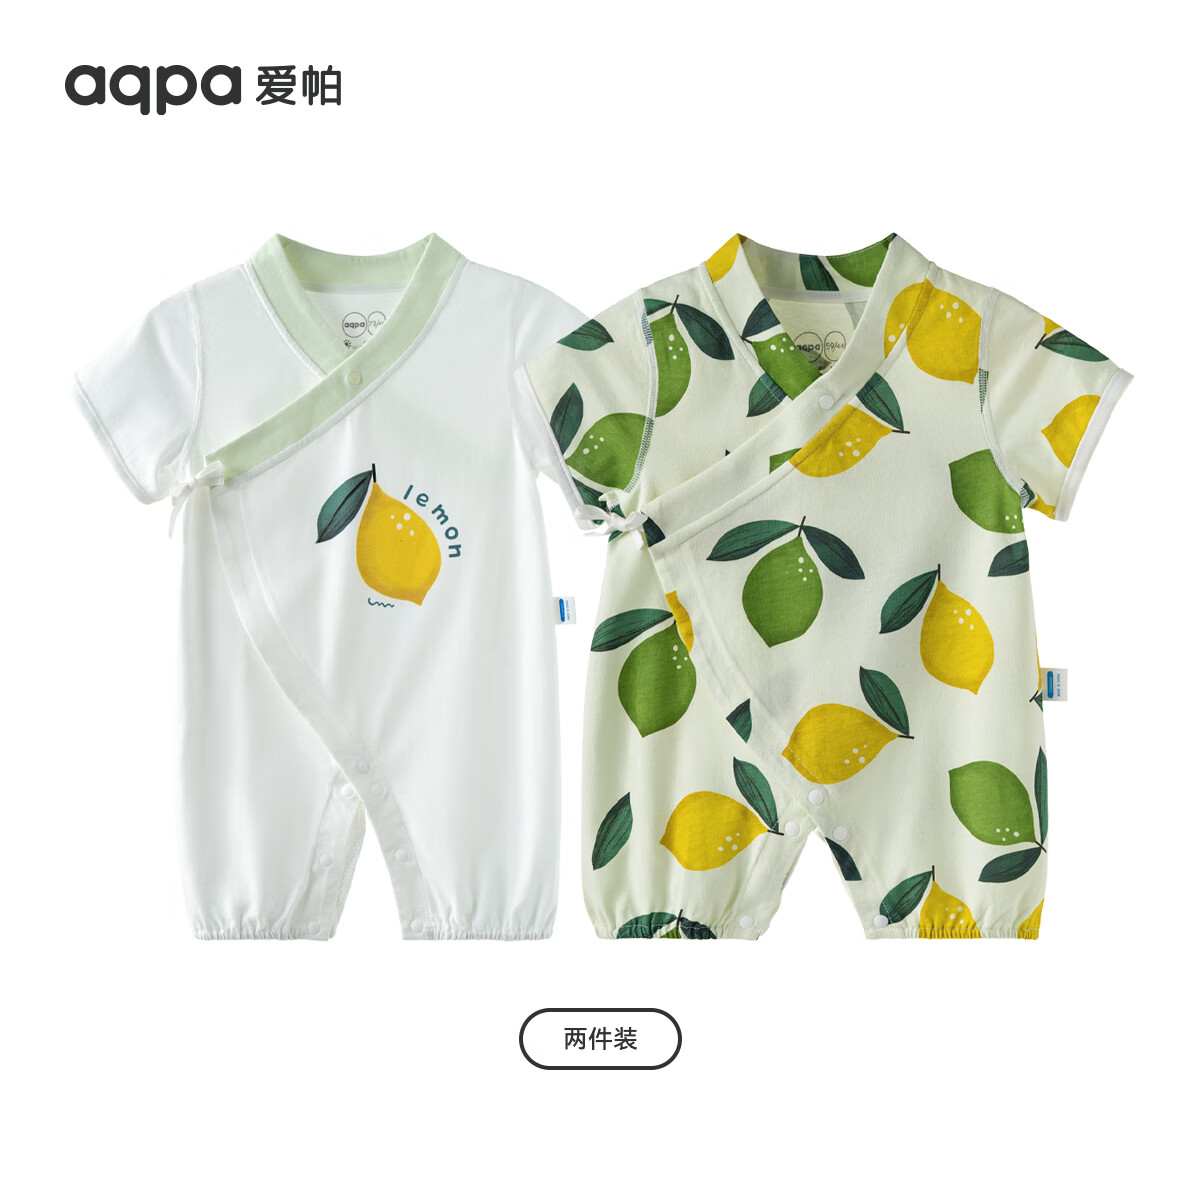 aqpa 婴儿纯棉夏季连体衣 2件 66元包邮，折33元/件（需用券）